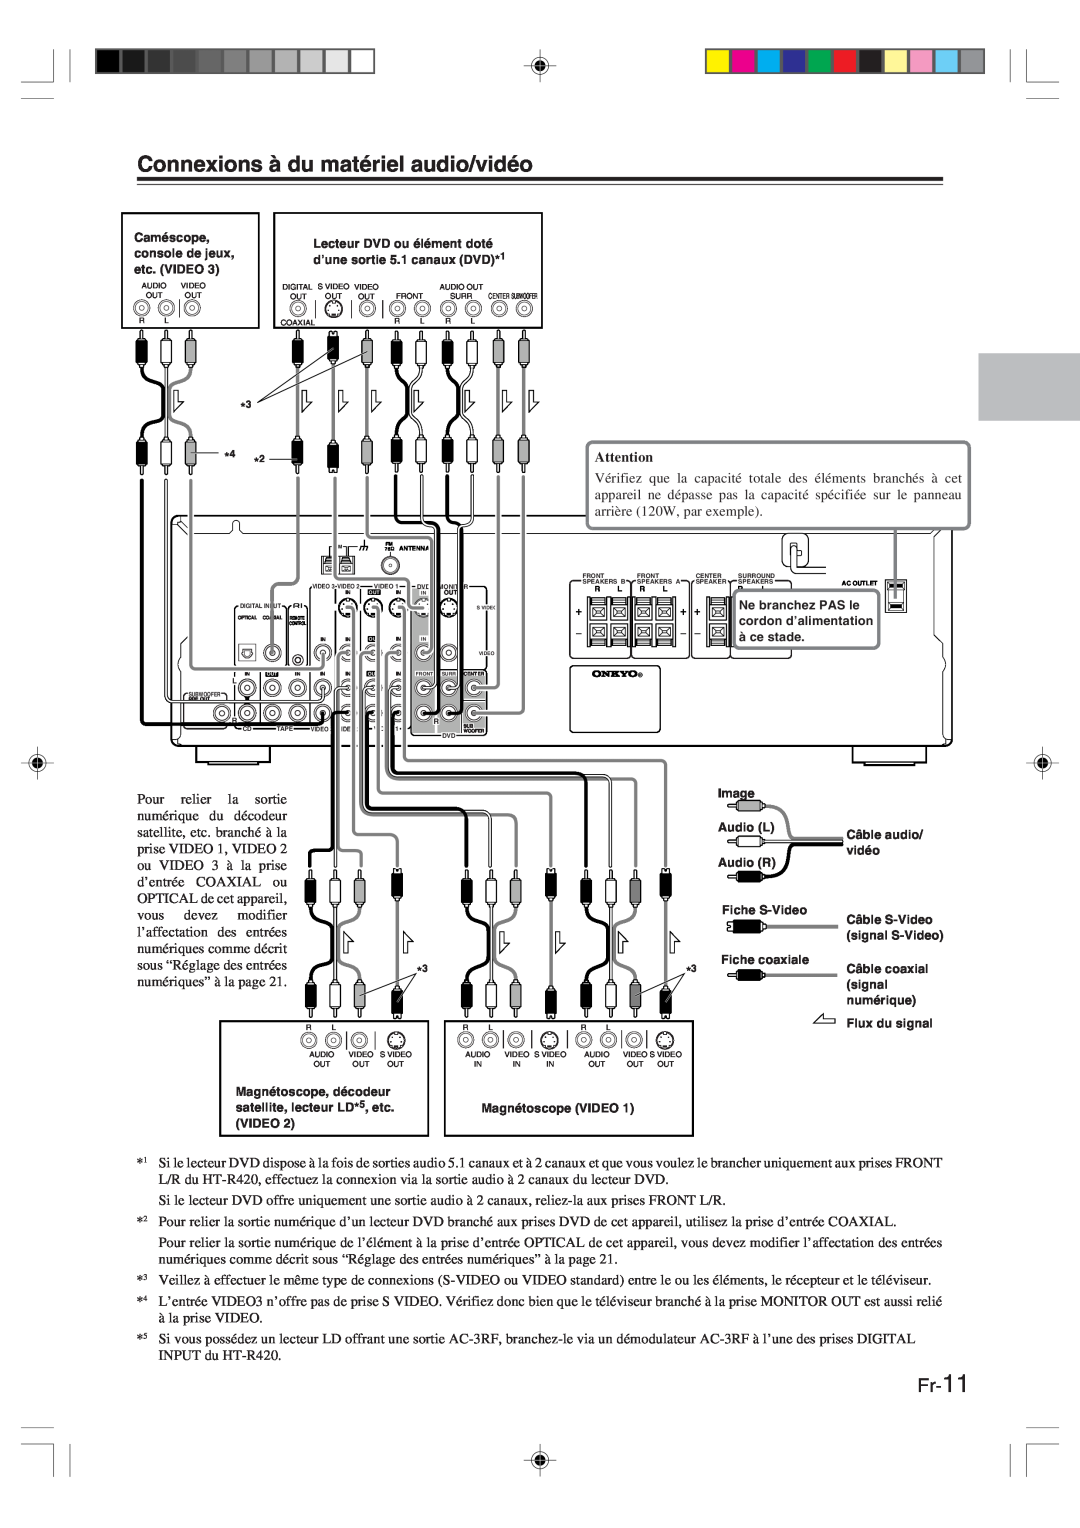 Onkyo HT-R420 manual Connexions à du matériel audio/vidéo, Fr-11 